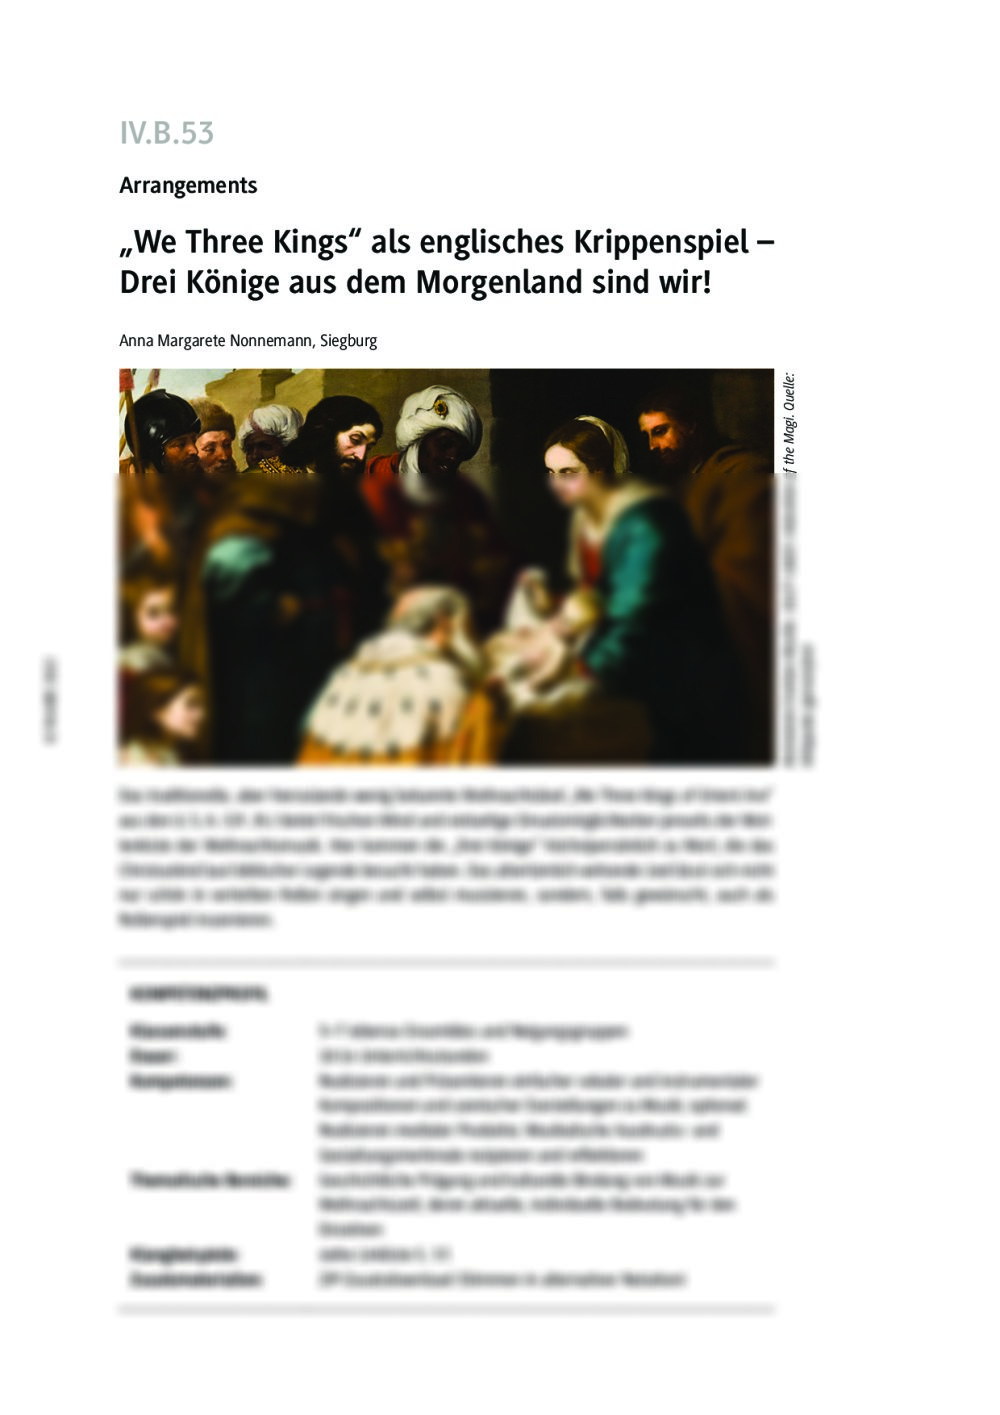 "We Three Kings" als englisches Krippenspiel - Seite 1